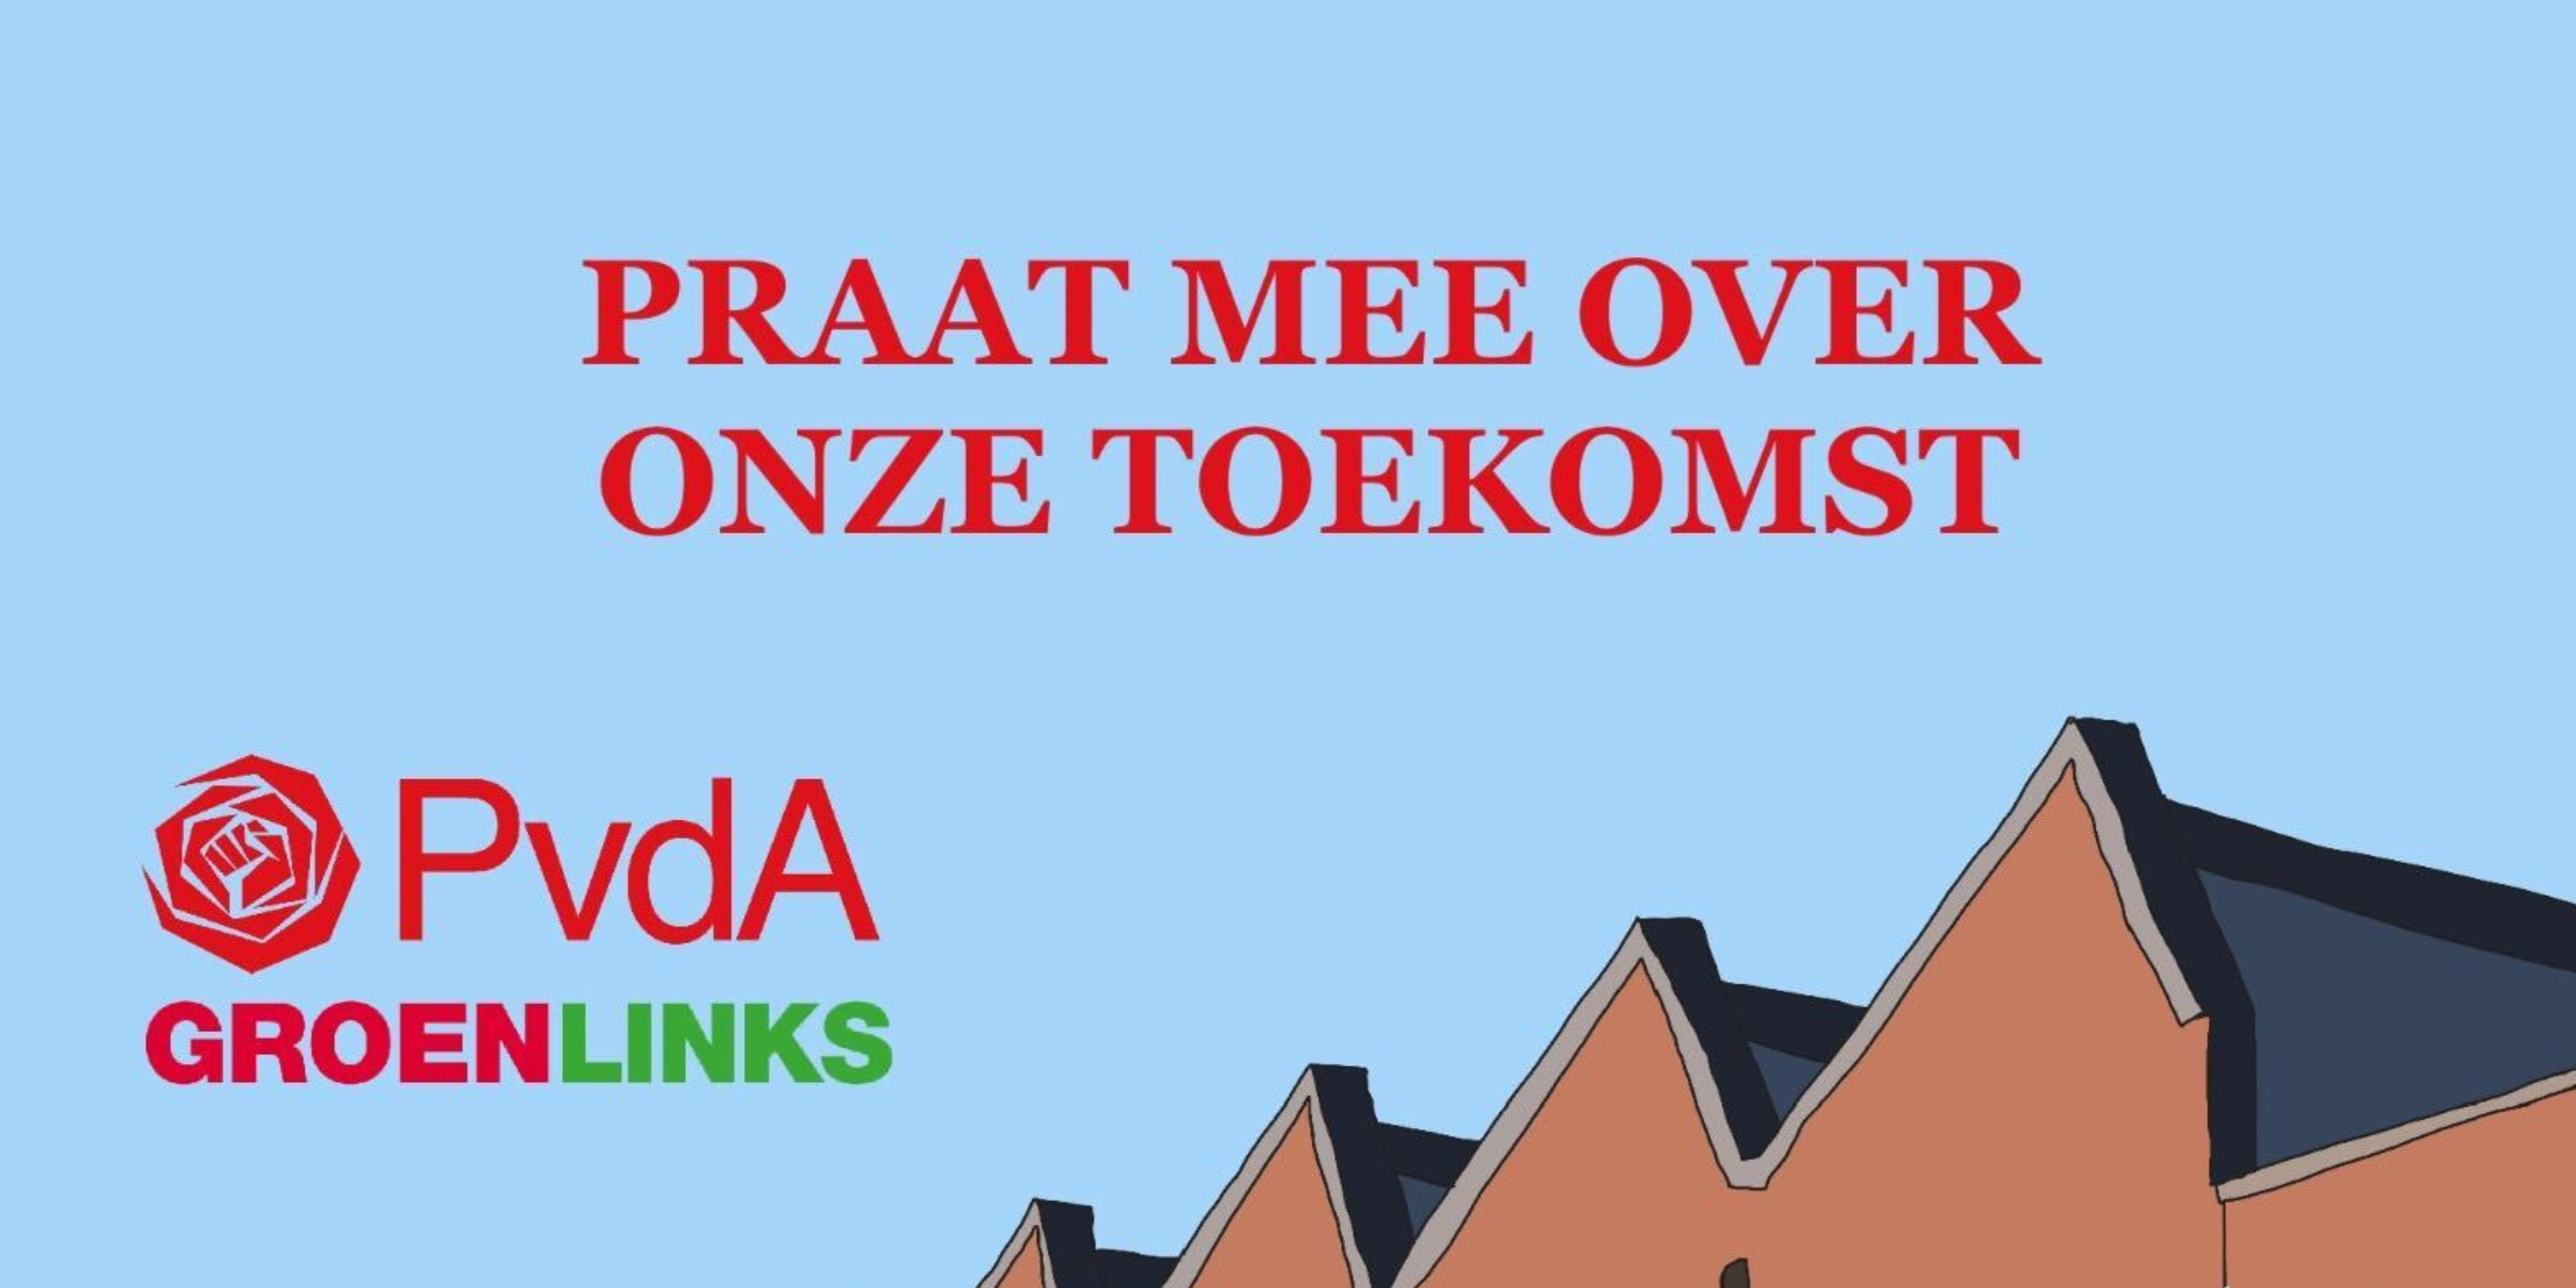 Praat mee over onze toekomst - PvdA en GroenLinks